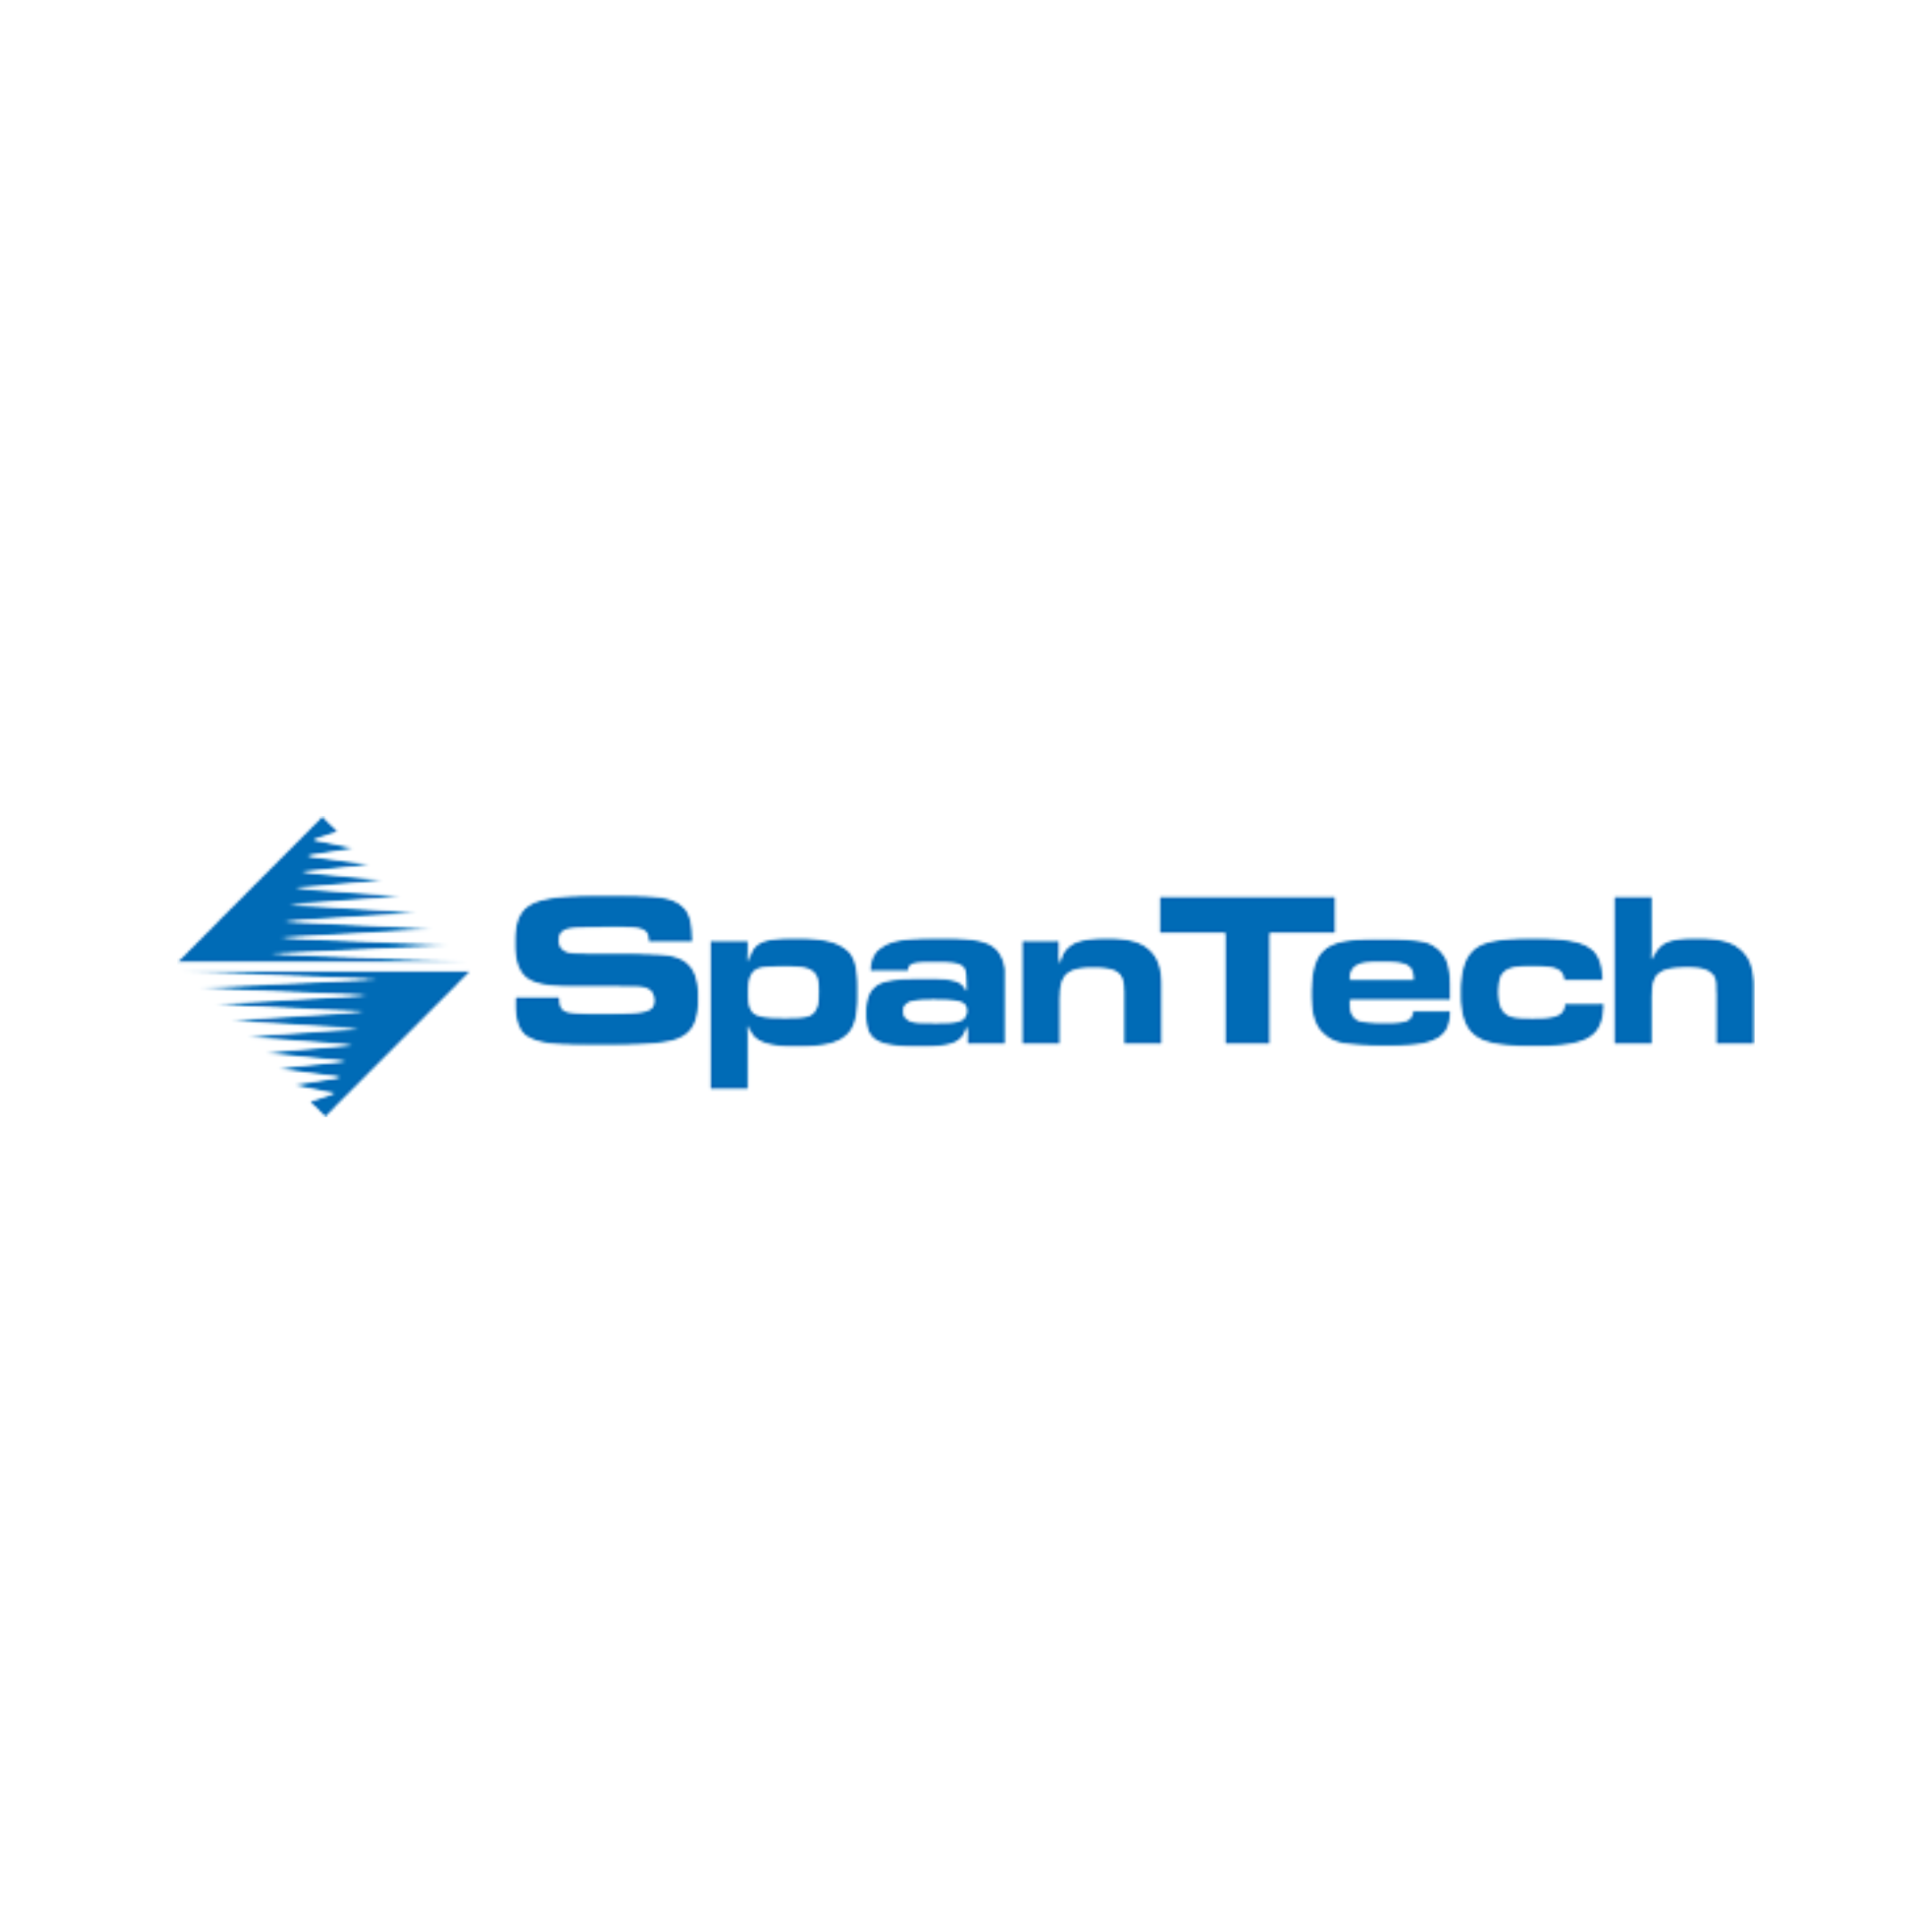 Span Tech Logo